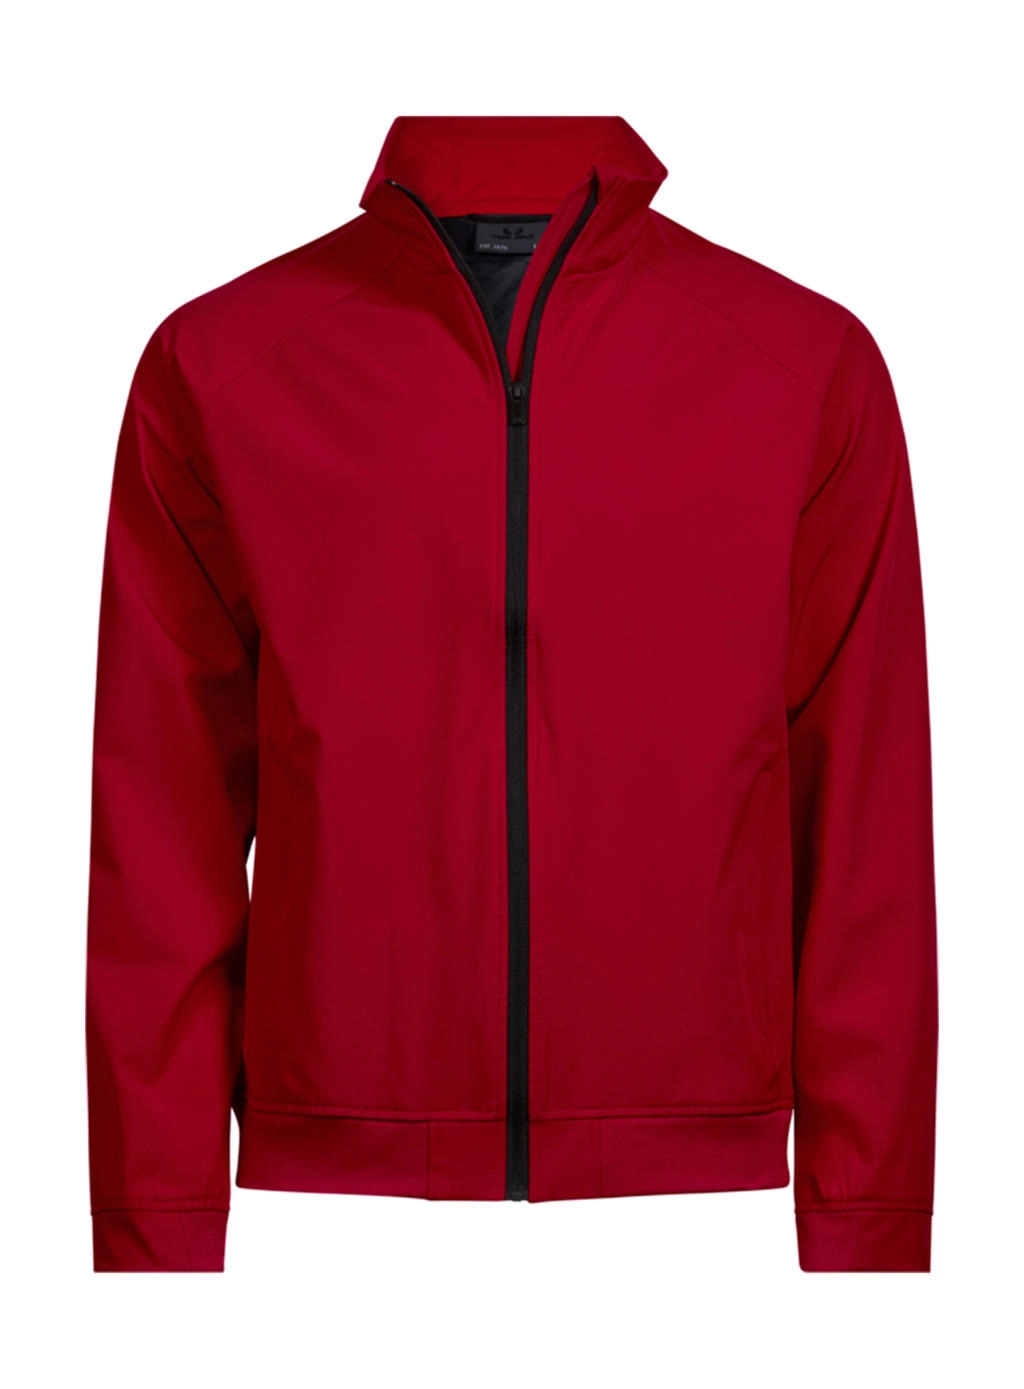 Club Jacket zum Besticken und Bedrucken in der Farbe Red mit Ihren Logo, Schriftzug oder Motiv.